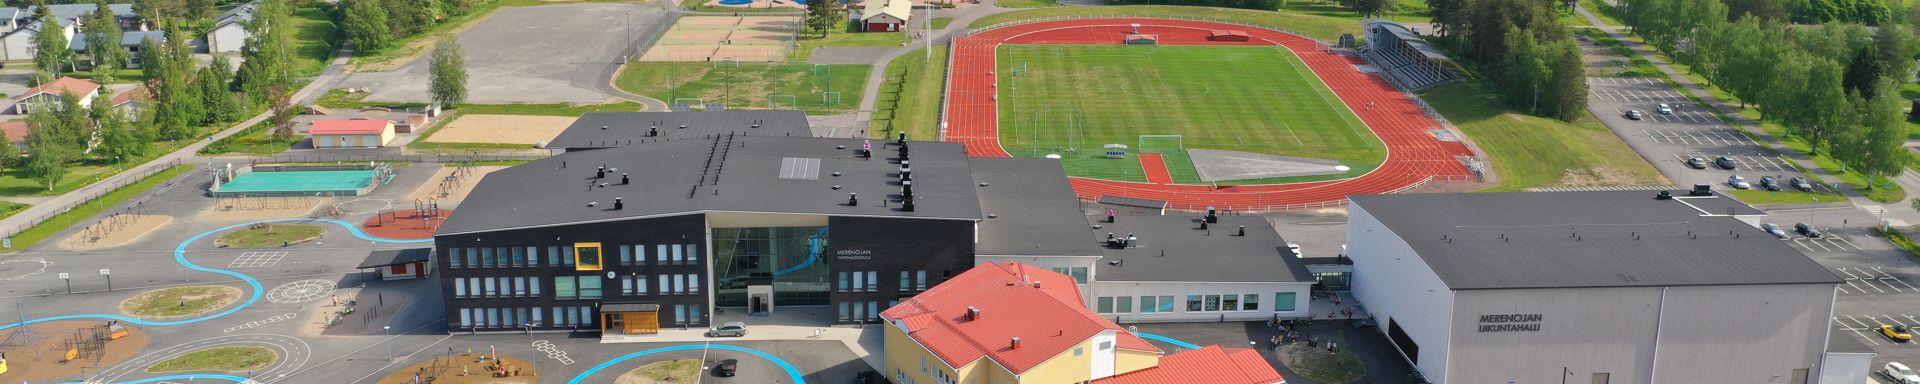 Koulurakennuksia ja taustalla urheilukenttä.